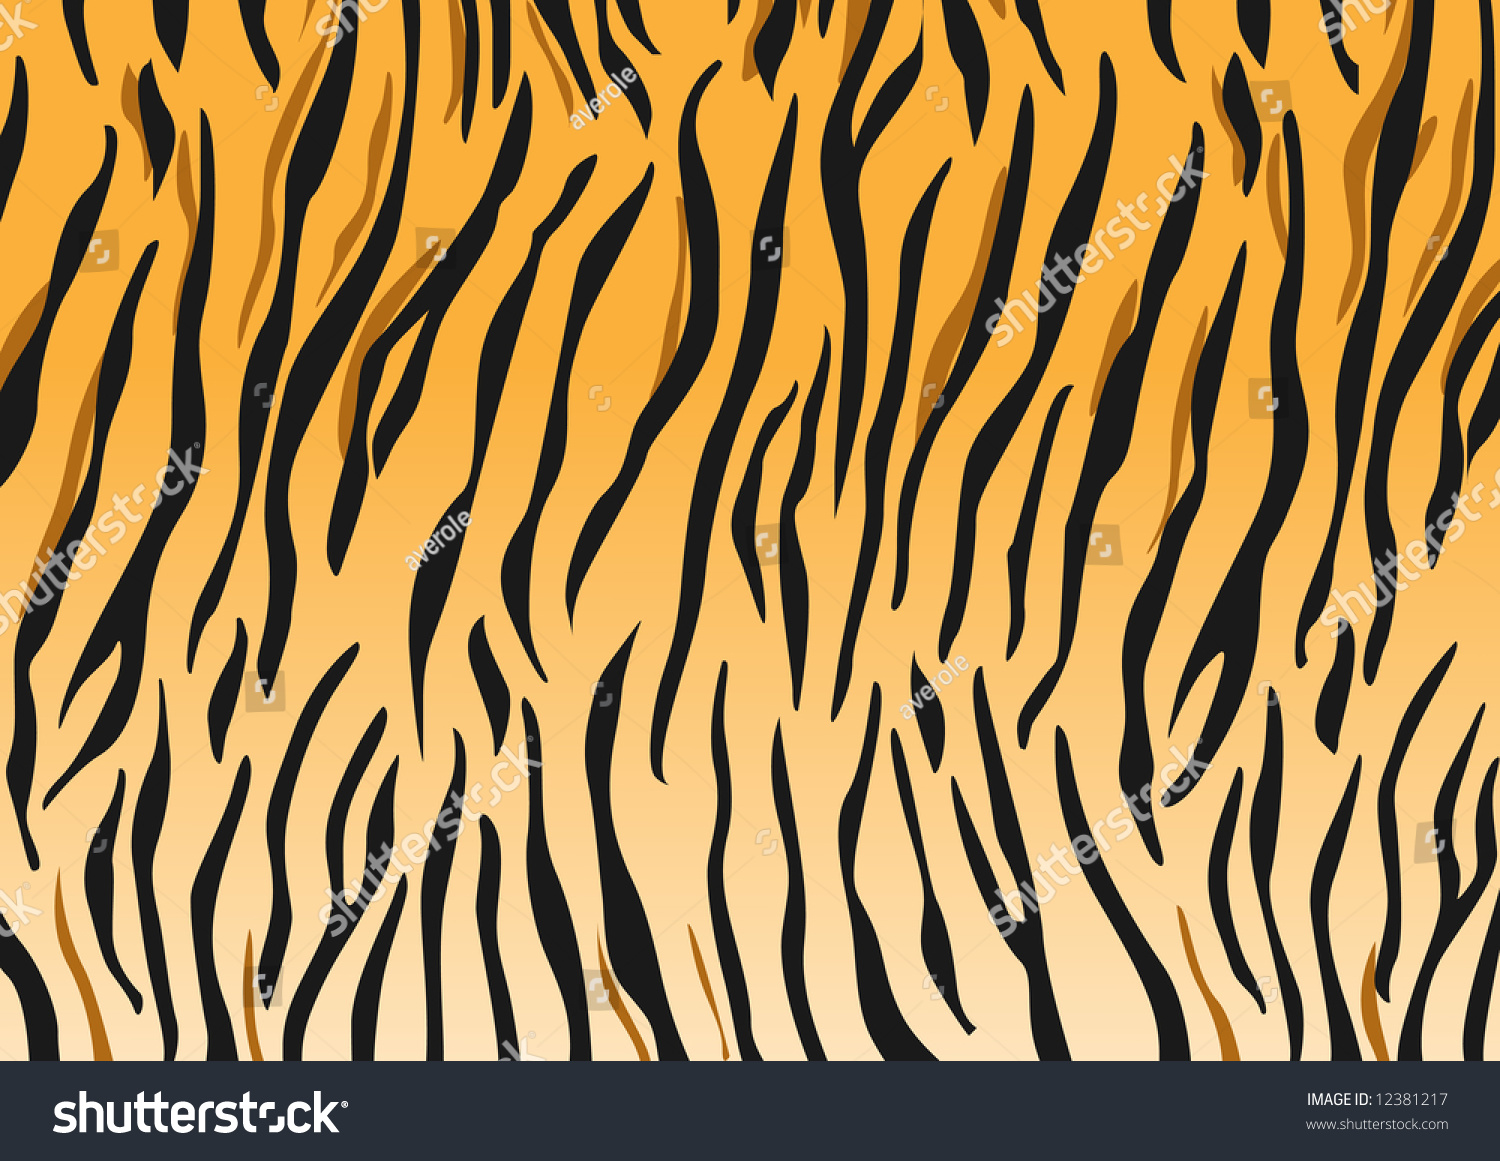 Vector Tiger Black And Orange Stripped Tiger Design - 12381217 ...